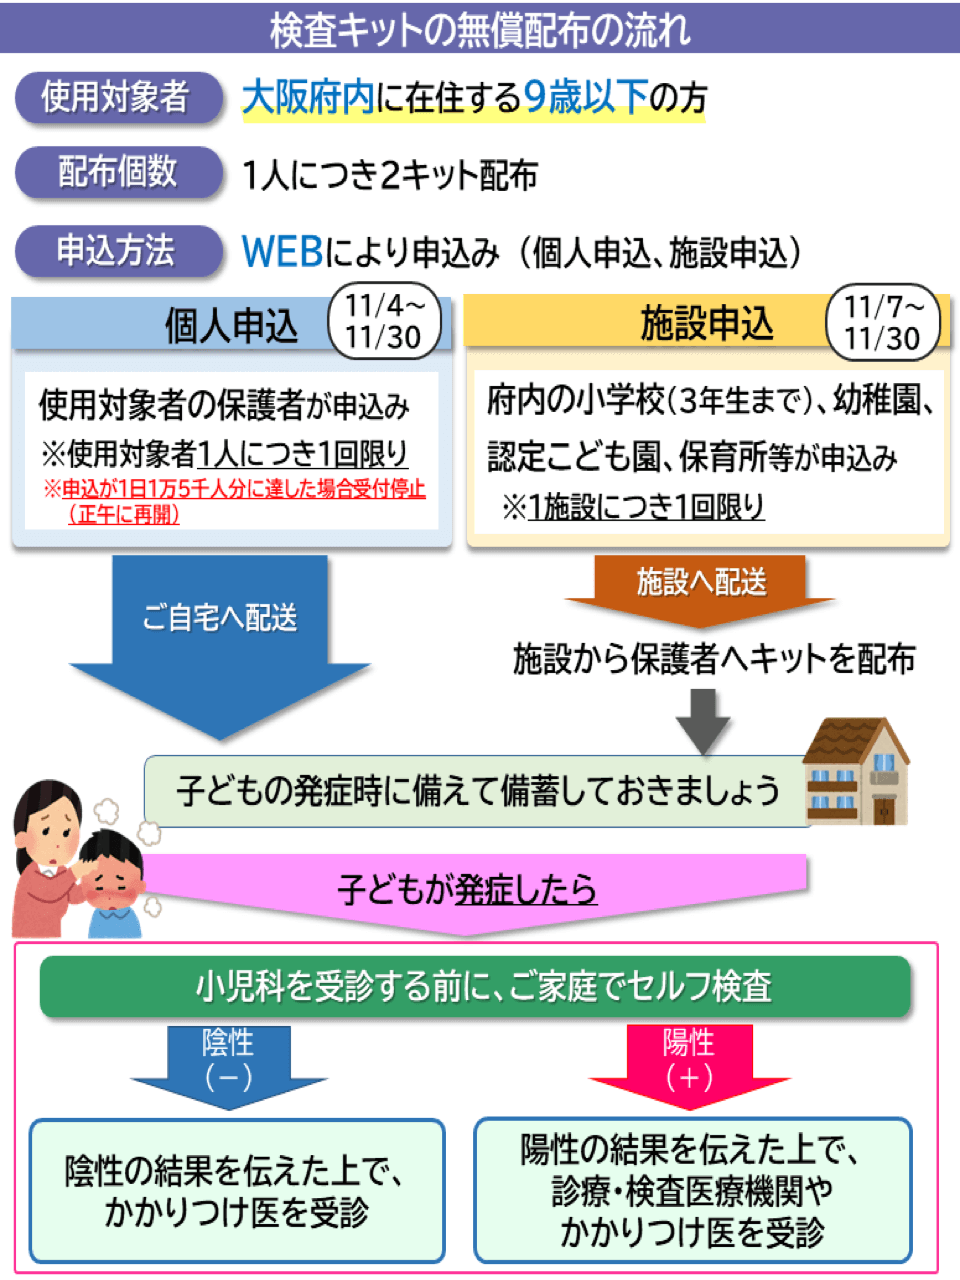 大阪府の新型コロナウイルス抗原定性検査キット無償配布の流れの紹介写真